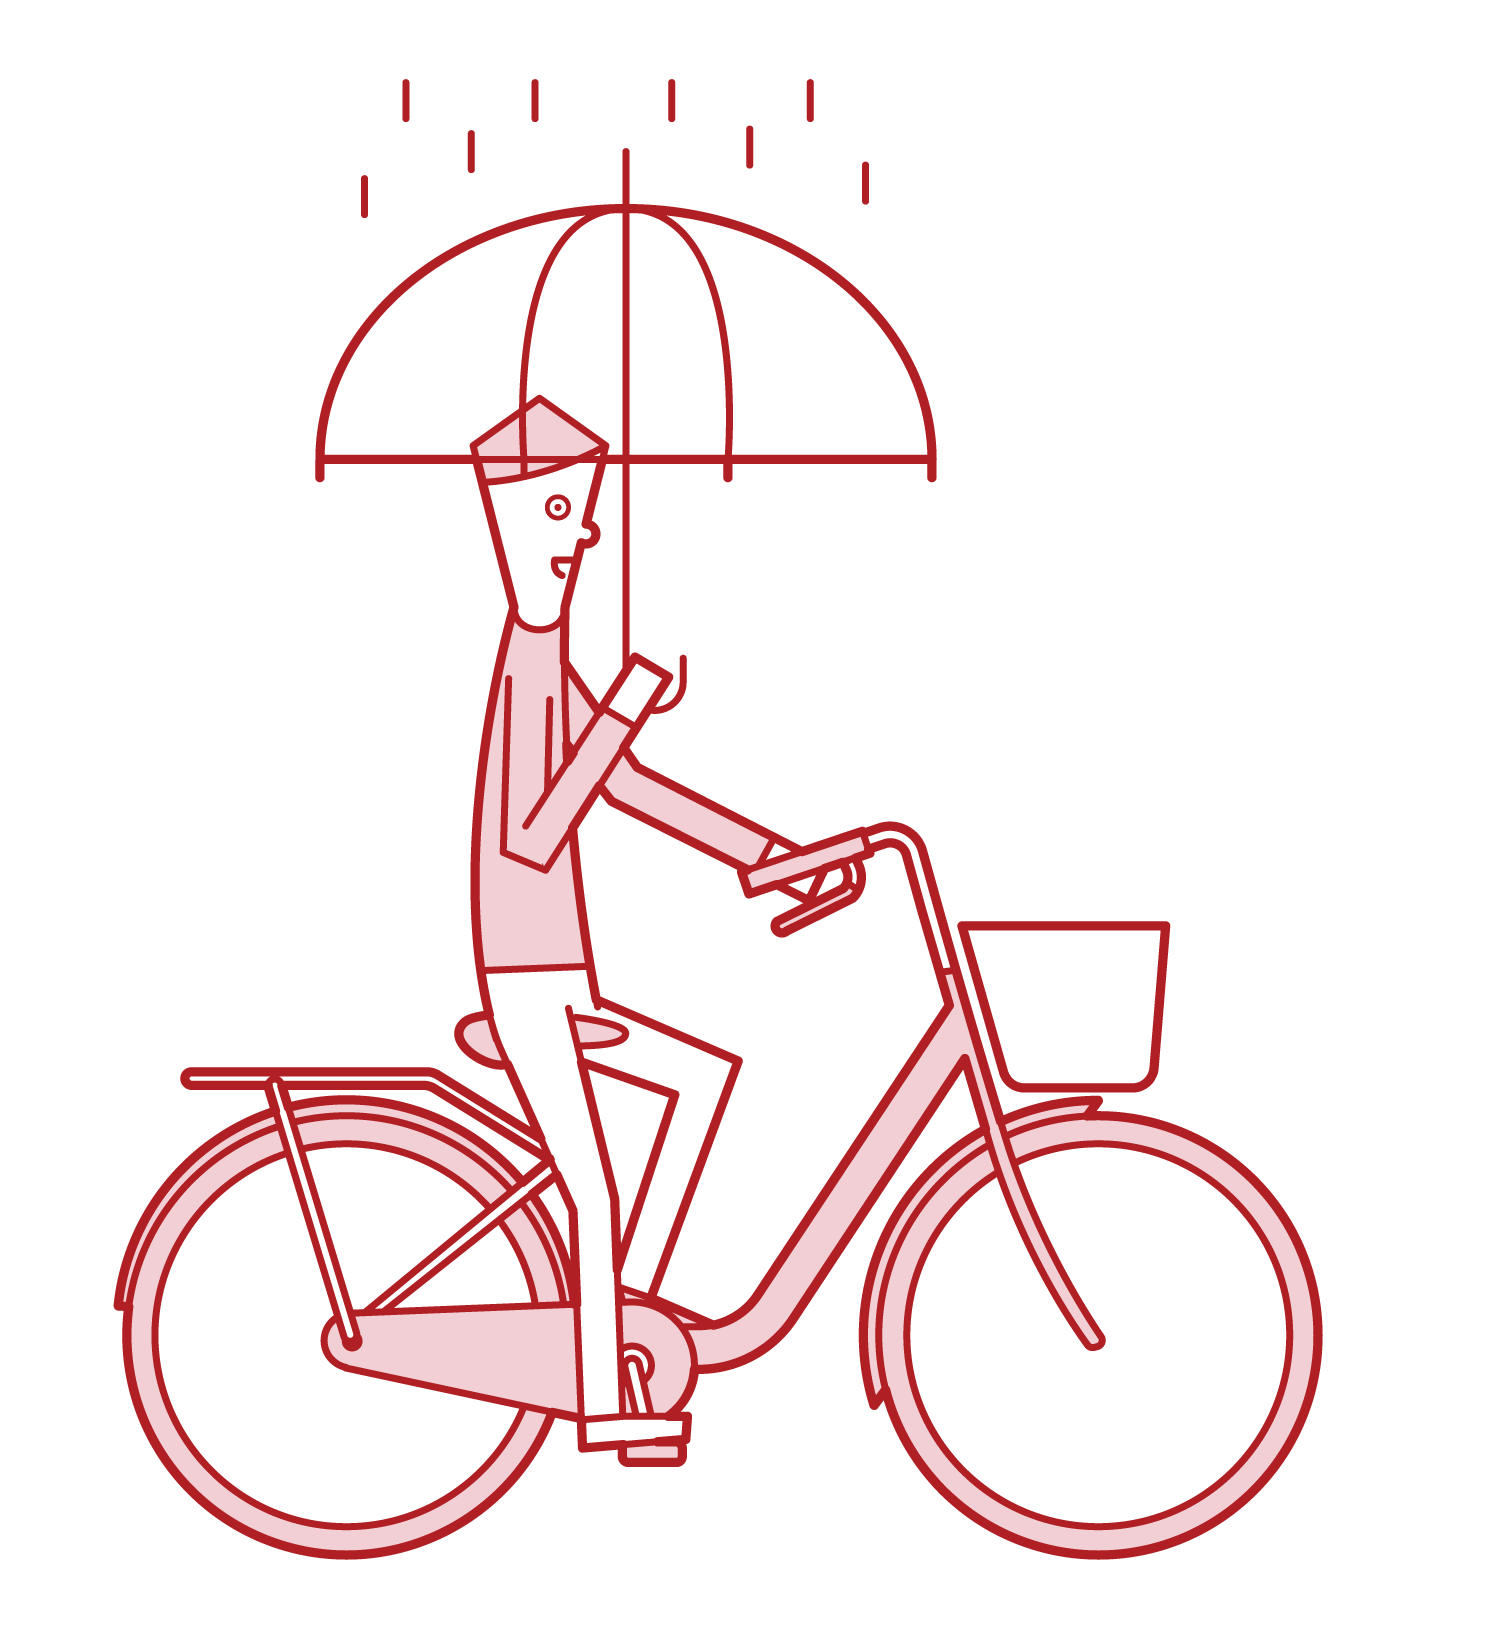 騎自行車的人(男性)的插圖,同時拿著雨傘